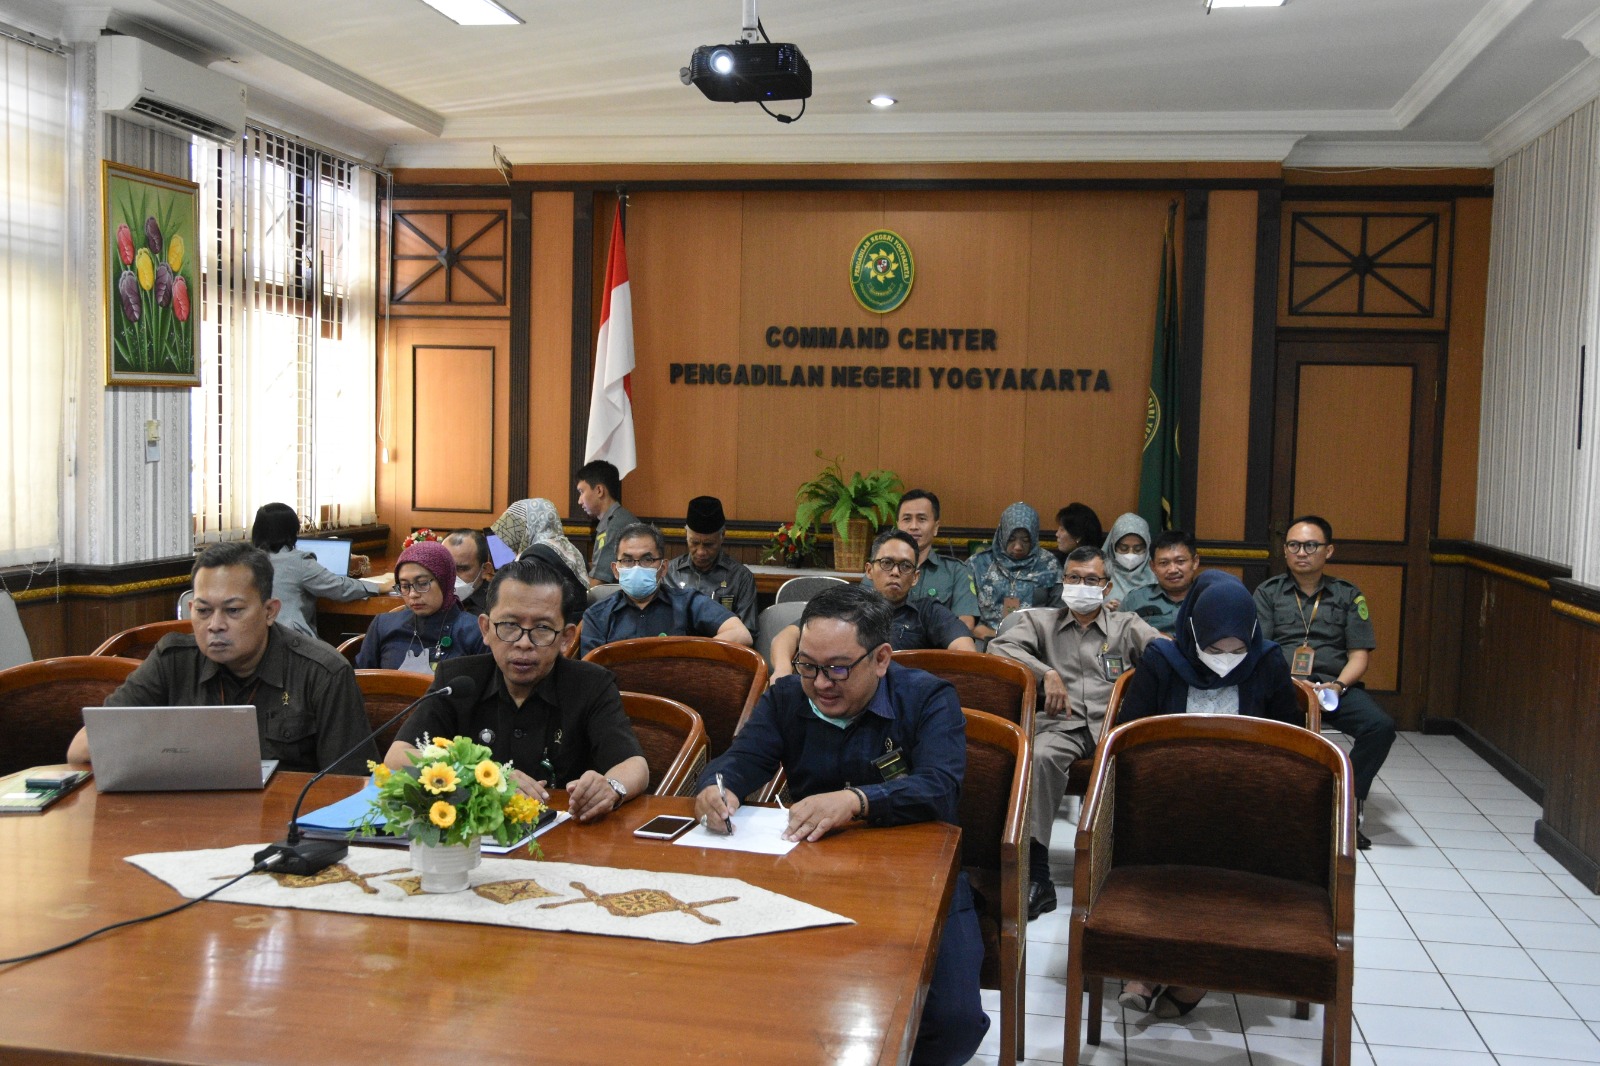 Pengadilan Negeri Yogyakarta Mengikuti Sosialisasi Pembaruan Aplikasi e-Berpadu versi 3.0.0 Hari Pertama